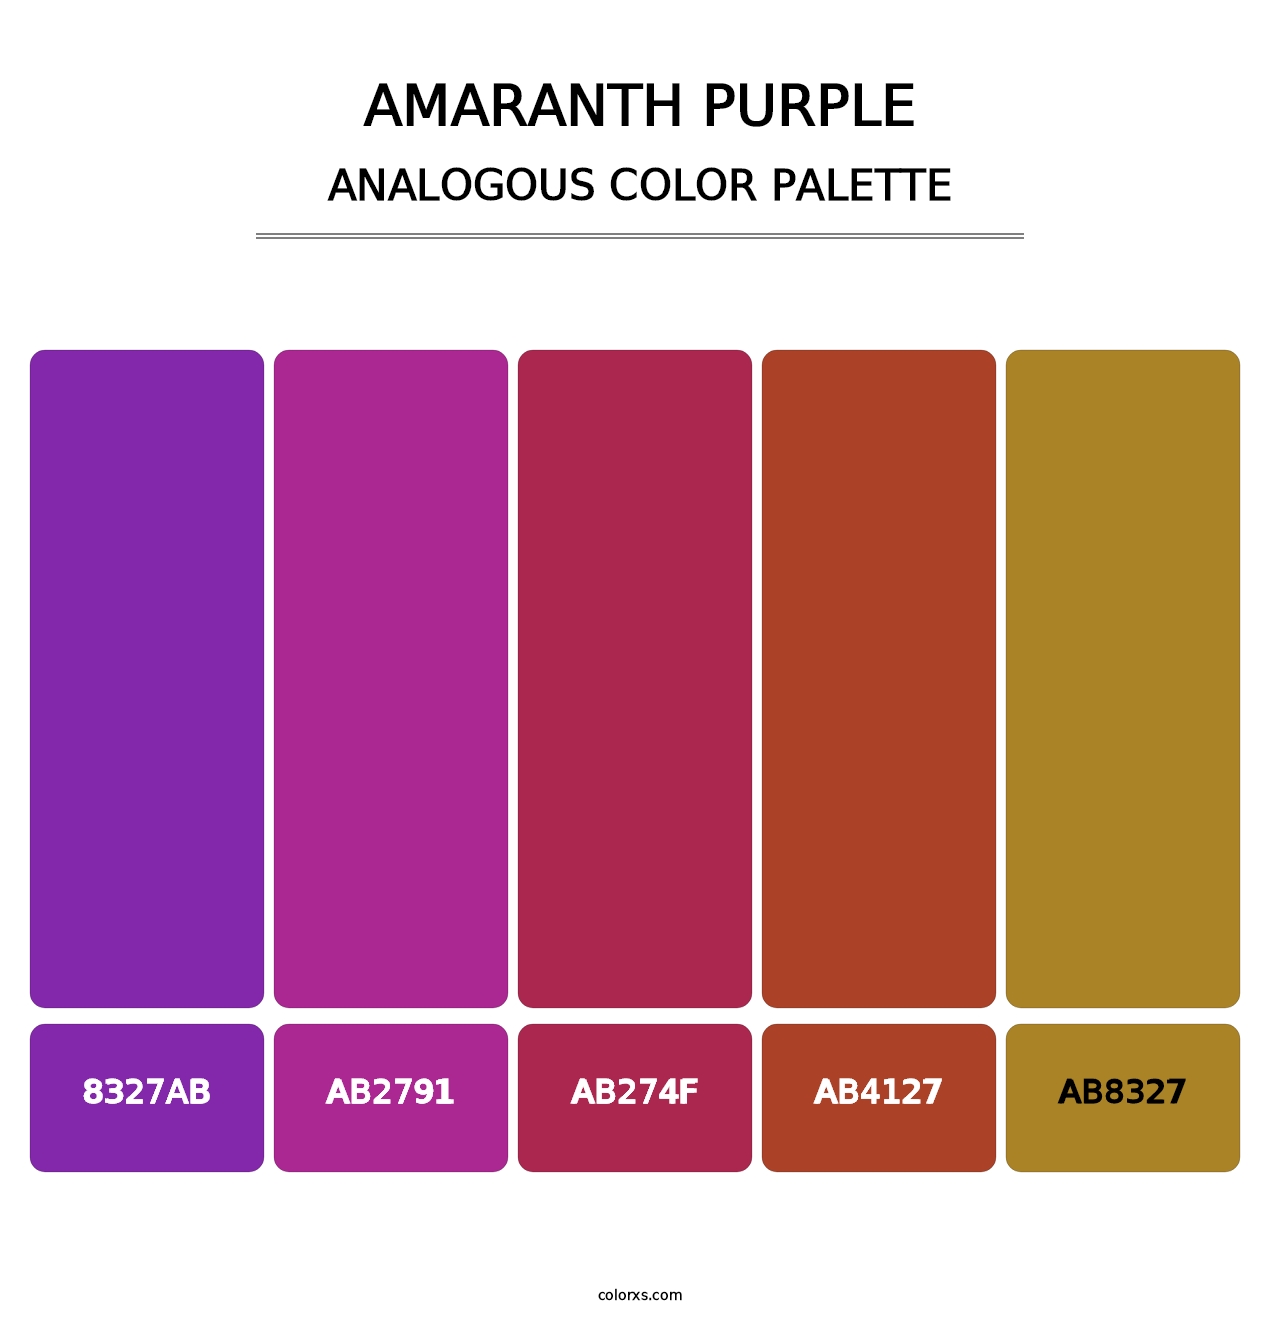 Amaranth Purple - Analogous Color Palette